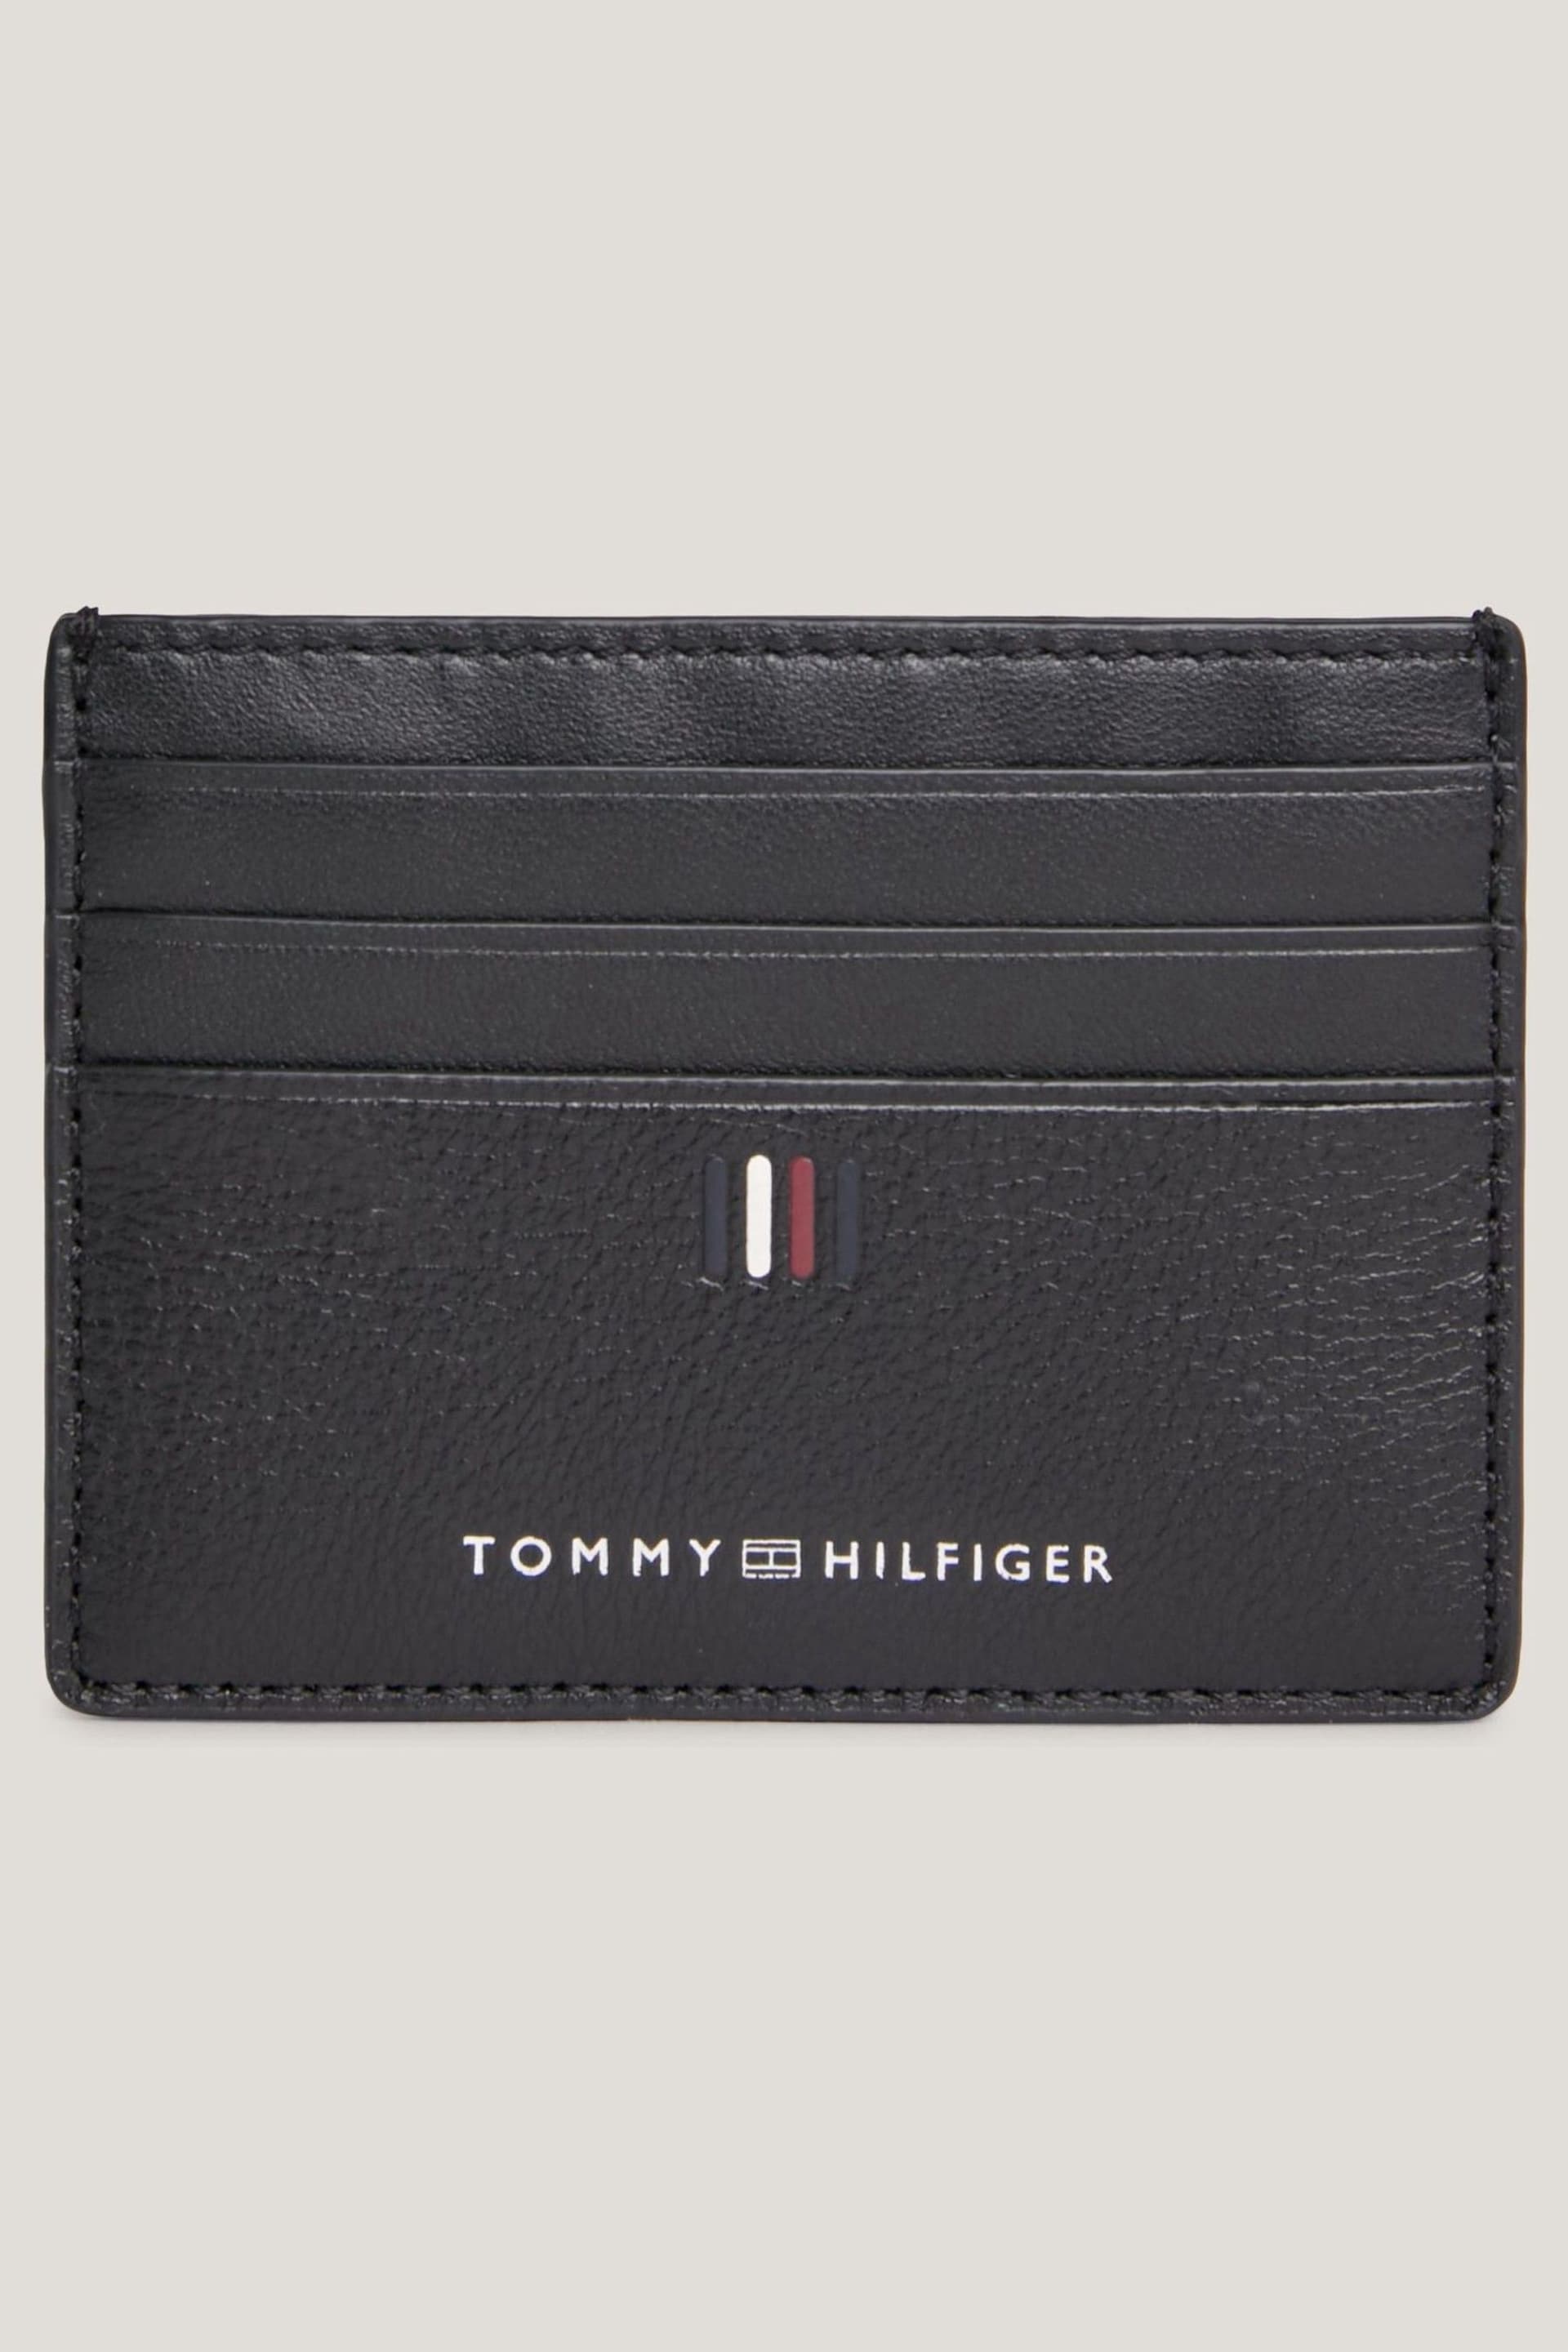 Tommy Hilfiger Central Black Card Holder - Image 1 of 4